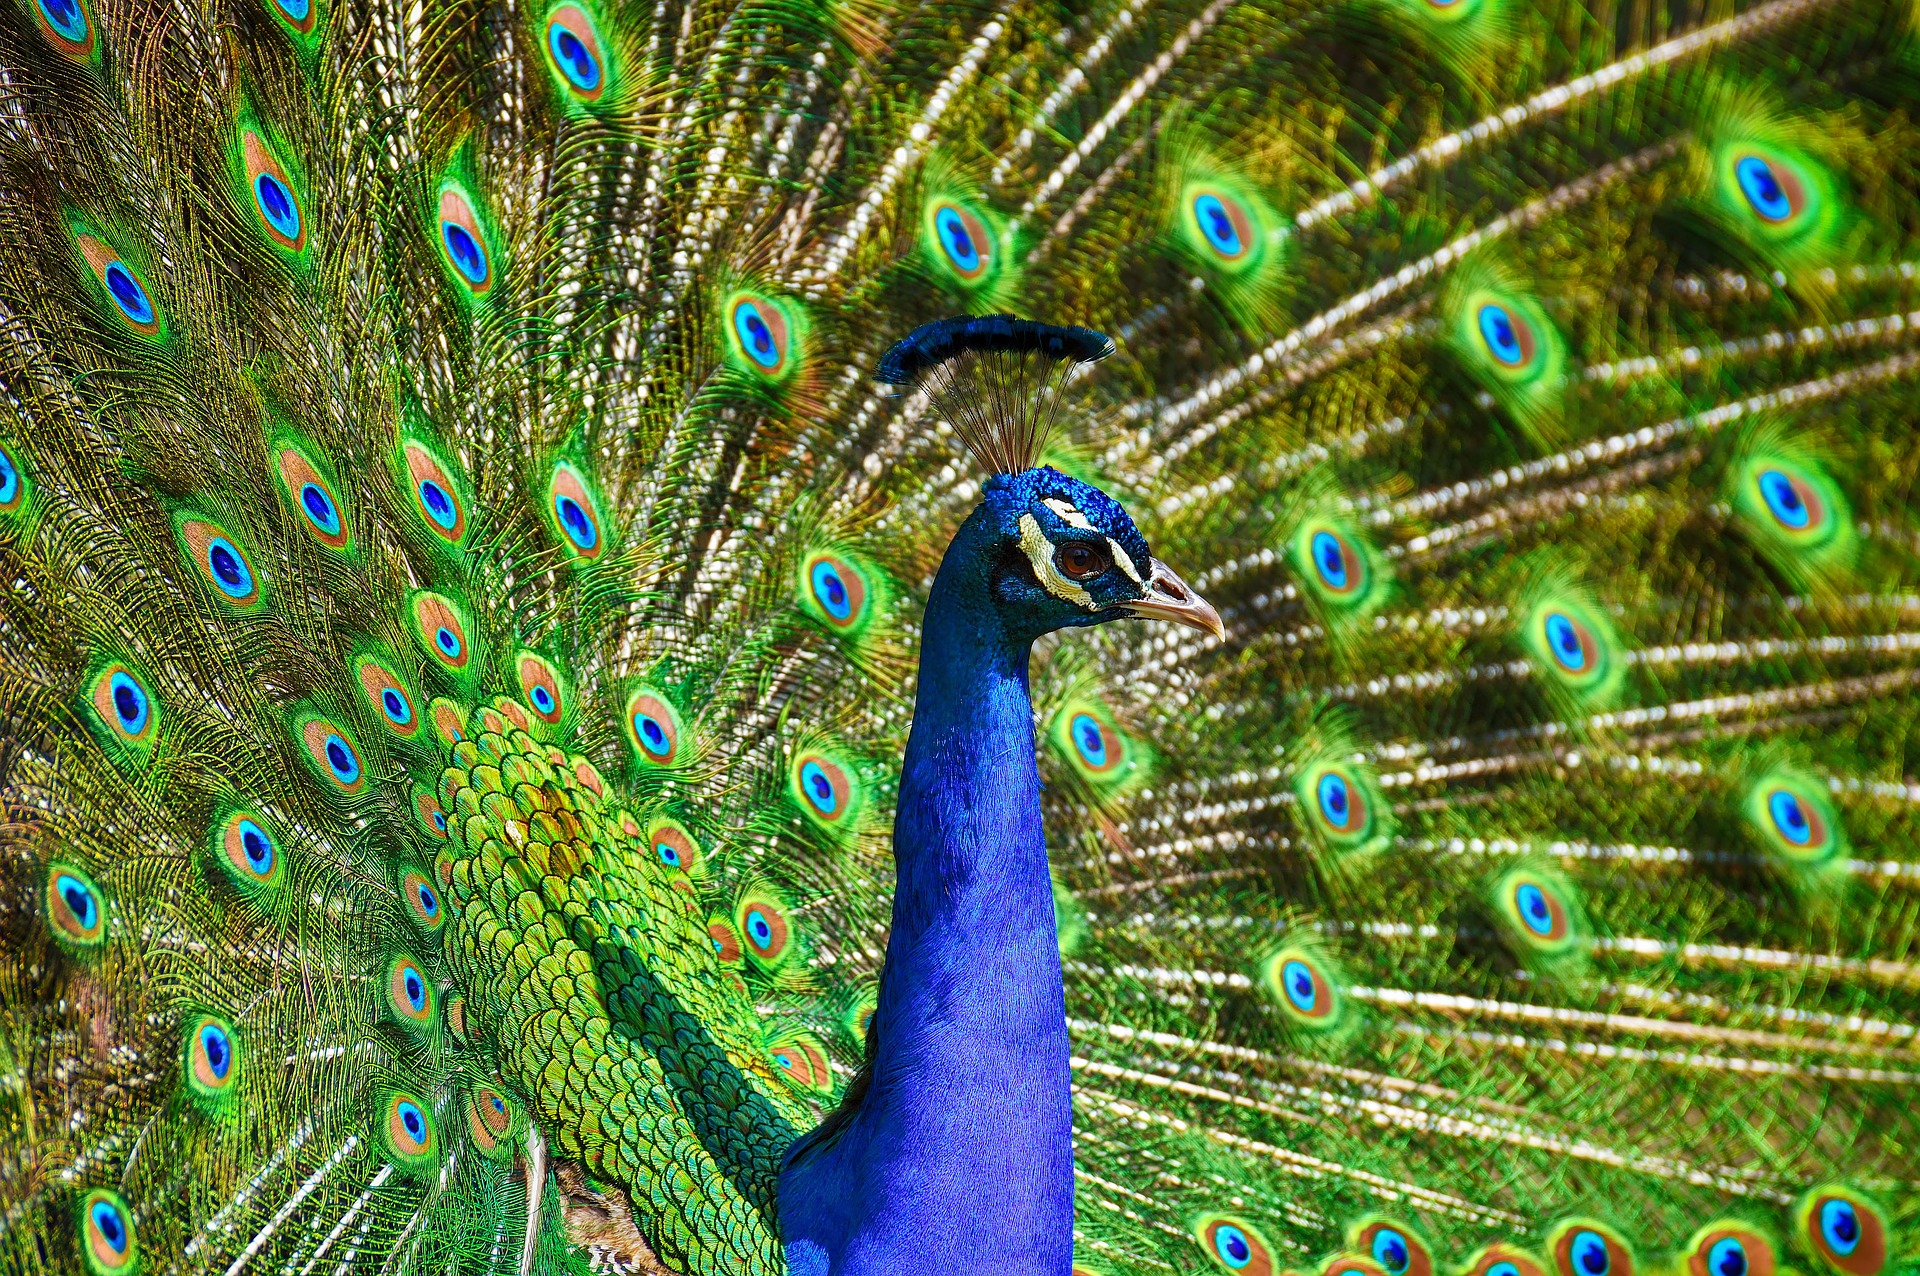 L'étonnante palette de couleurs dans la queue du paon. © Allanlau2000, Pixabay, DP